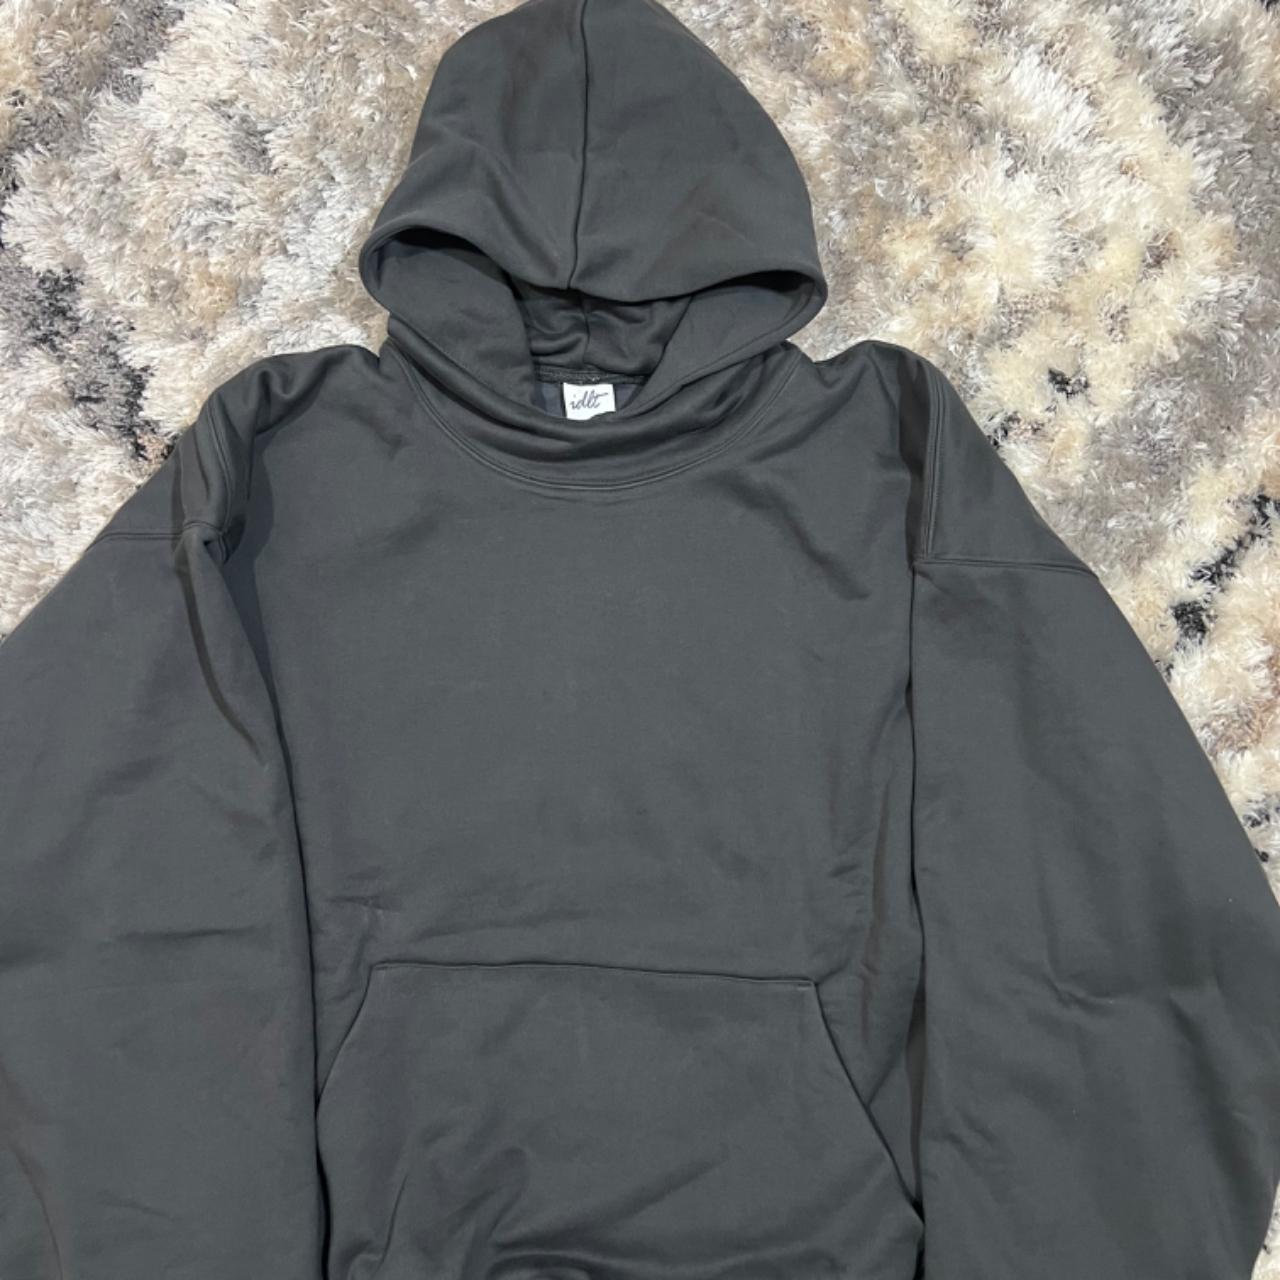 Kanye style baggy hoodie No logo - Depop